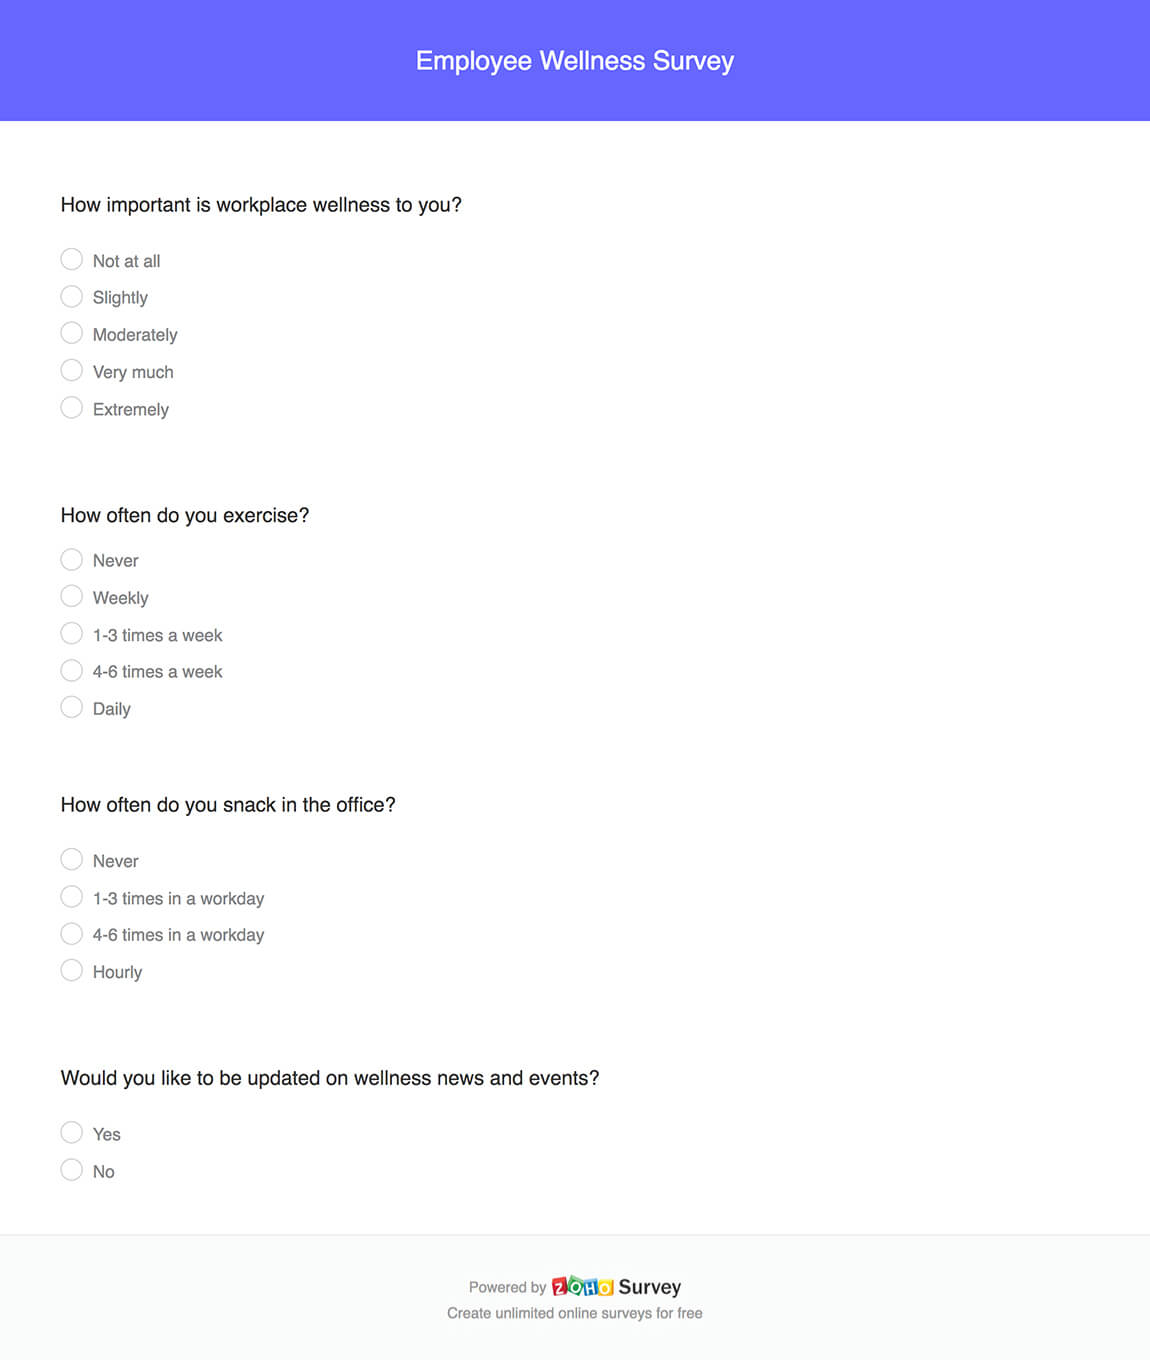 Employee wellness survey questionnaire template